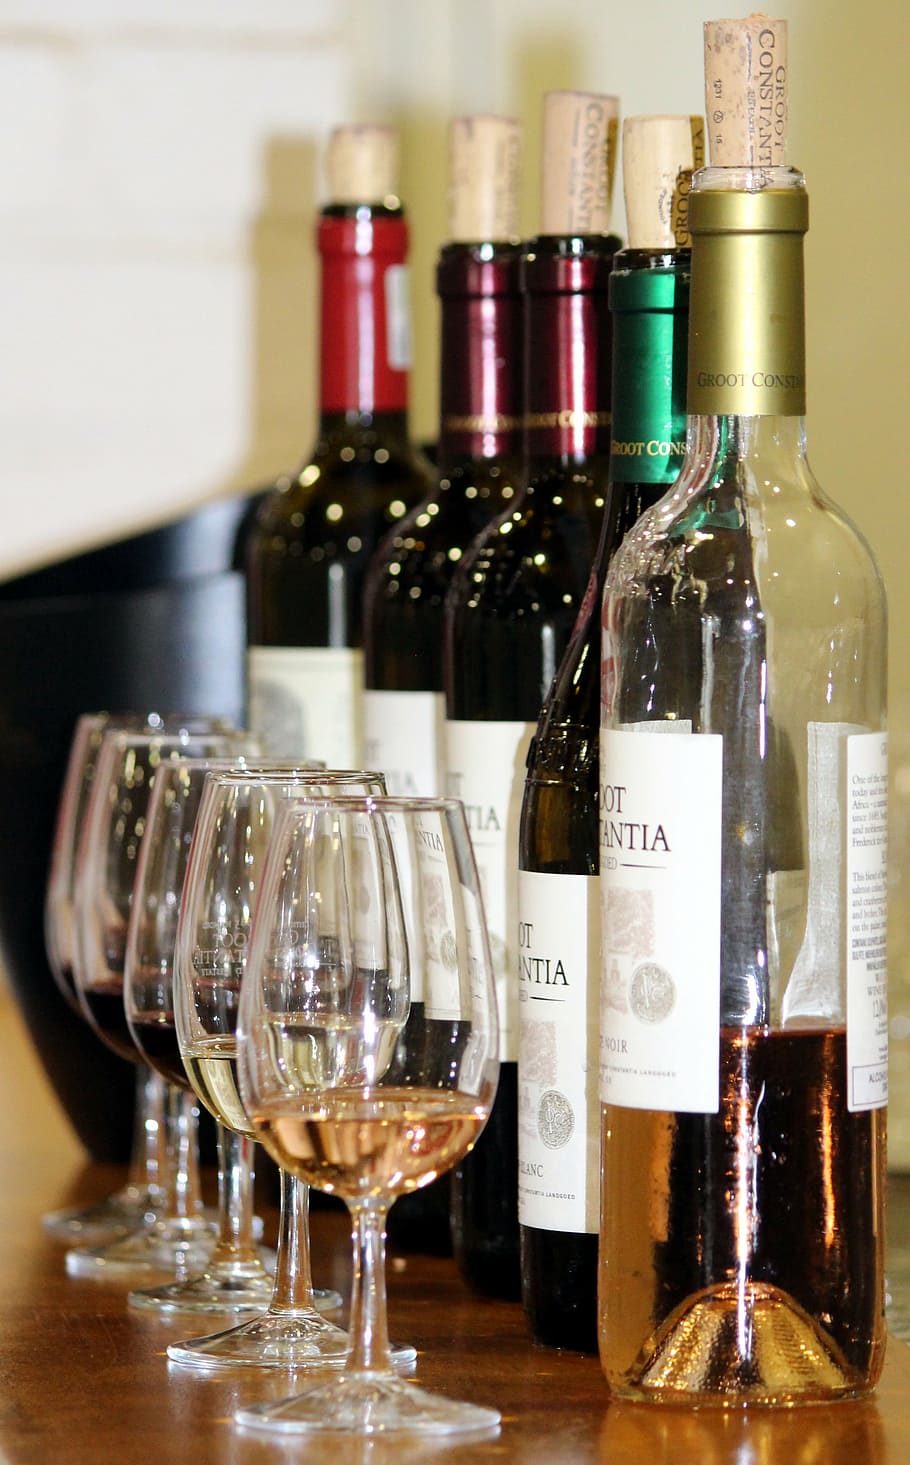 assorted glasses, wine tasting, glasses, wine bottles, new wine, wine, prost, red wine, cork, bottle